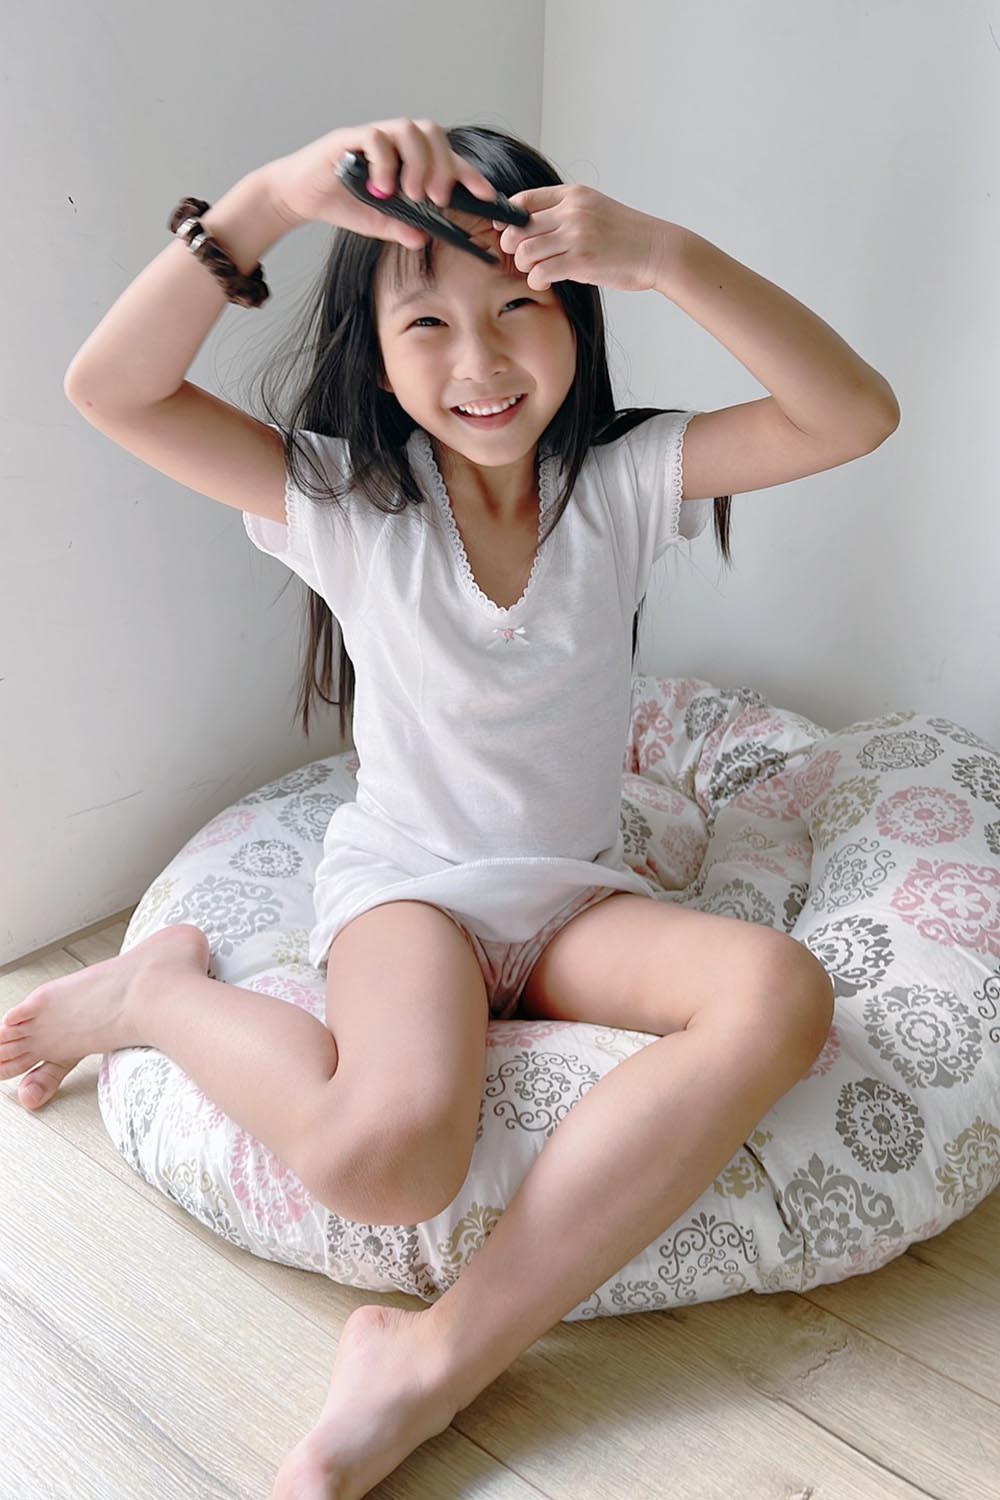 [啾團] 日本Gunze讓大人小孩穿上舒服到像沒穿的內衣褲,雙重保水潤膚減壓無鋼圈內衣+日本兒童內衣褲